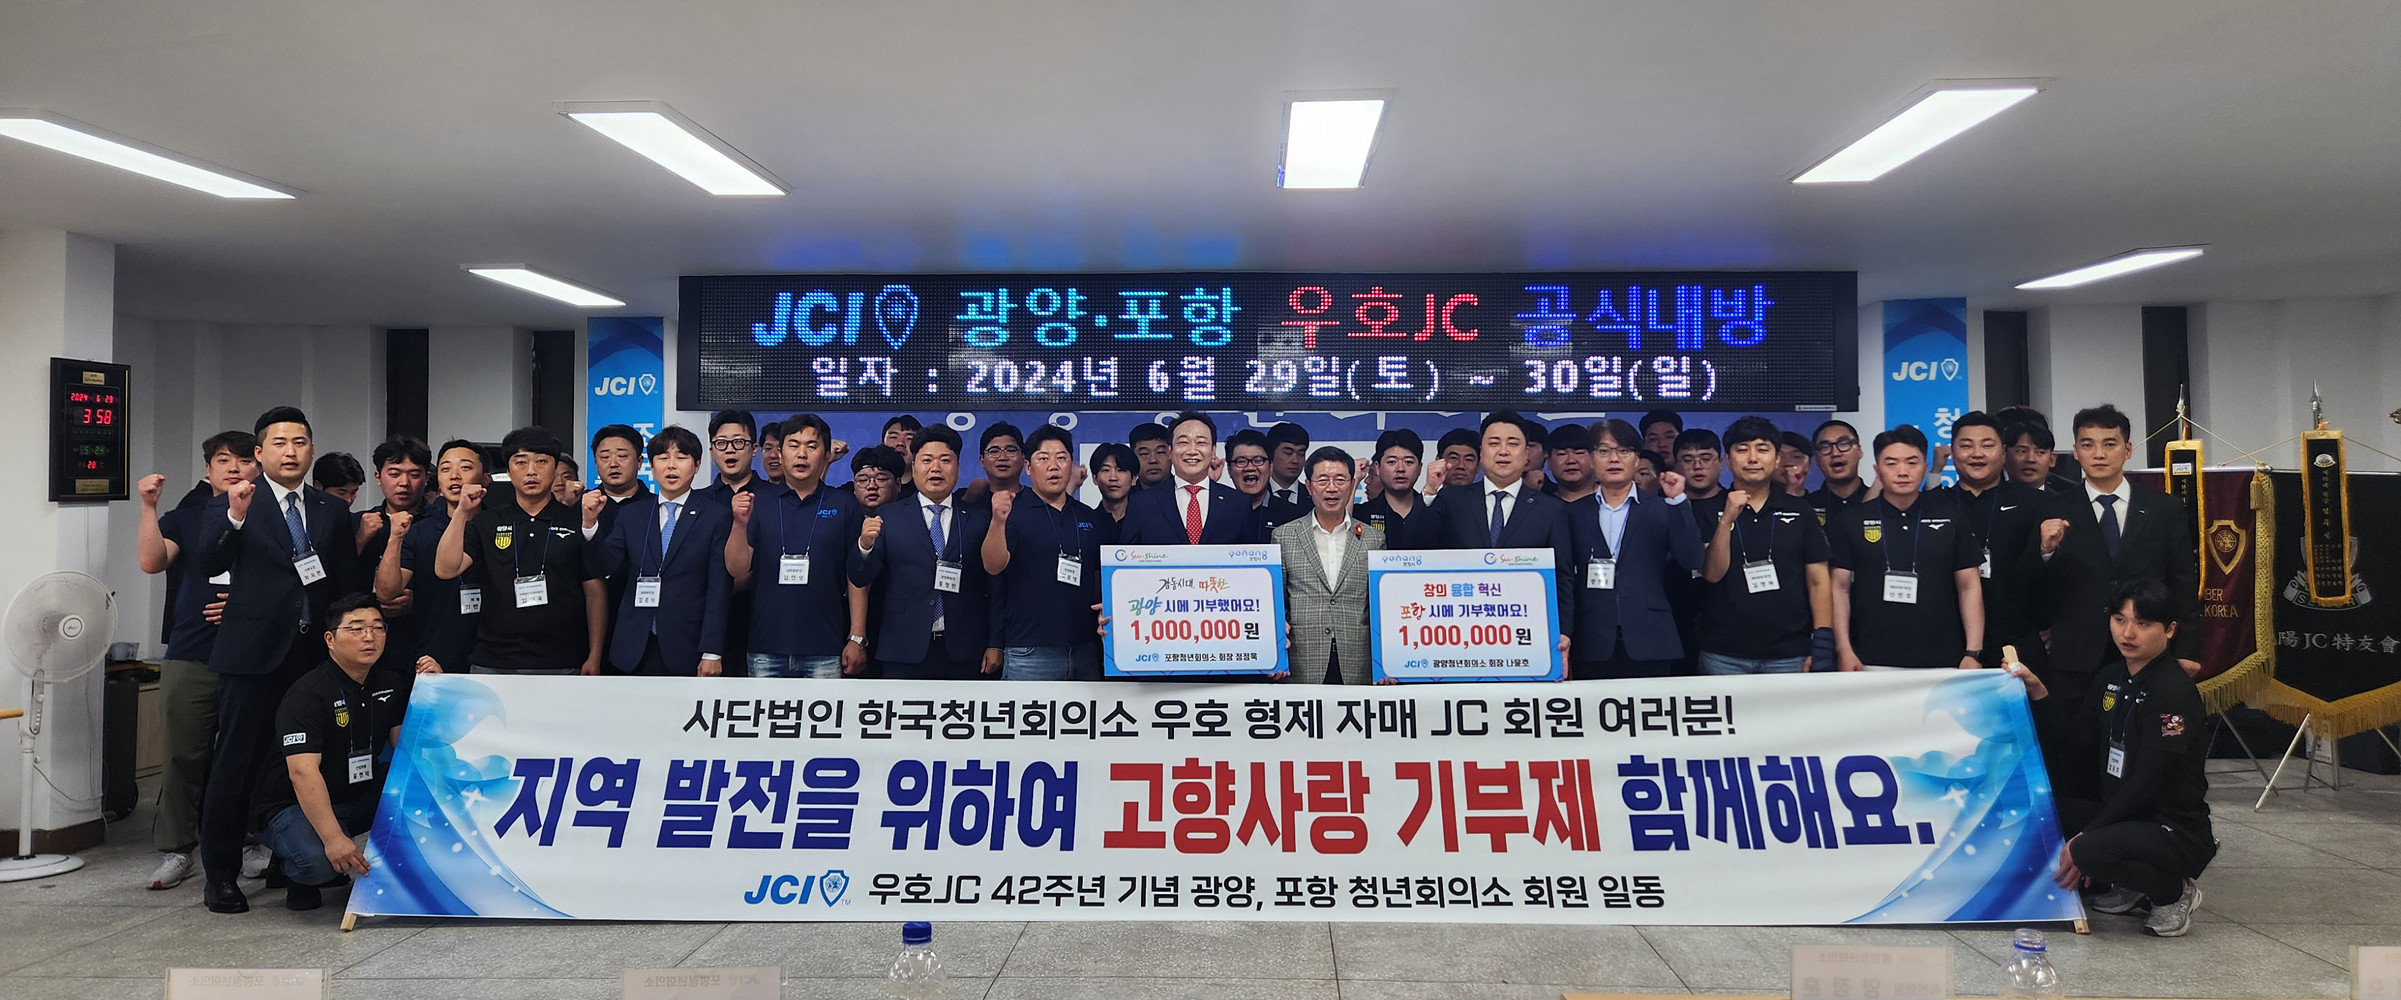 광양한국청년회의소(JC)-포항한국청년회의소(JC), 고향사랑 상호기부로 지역발전 위한 협력 약속